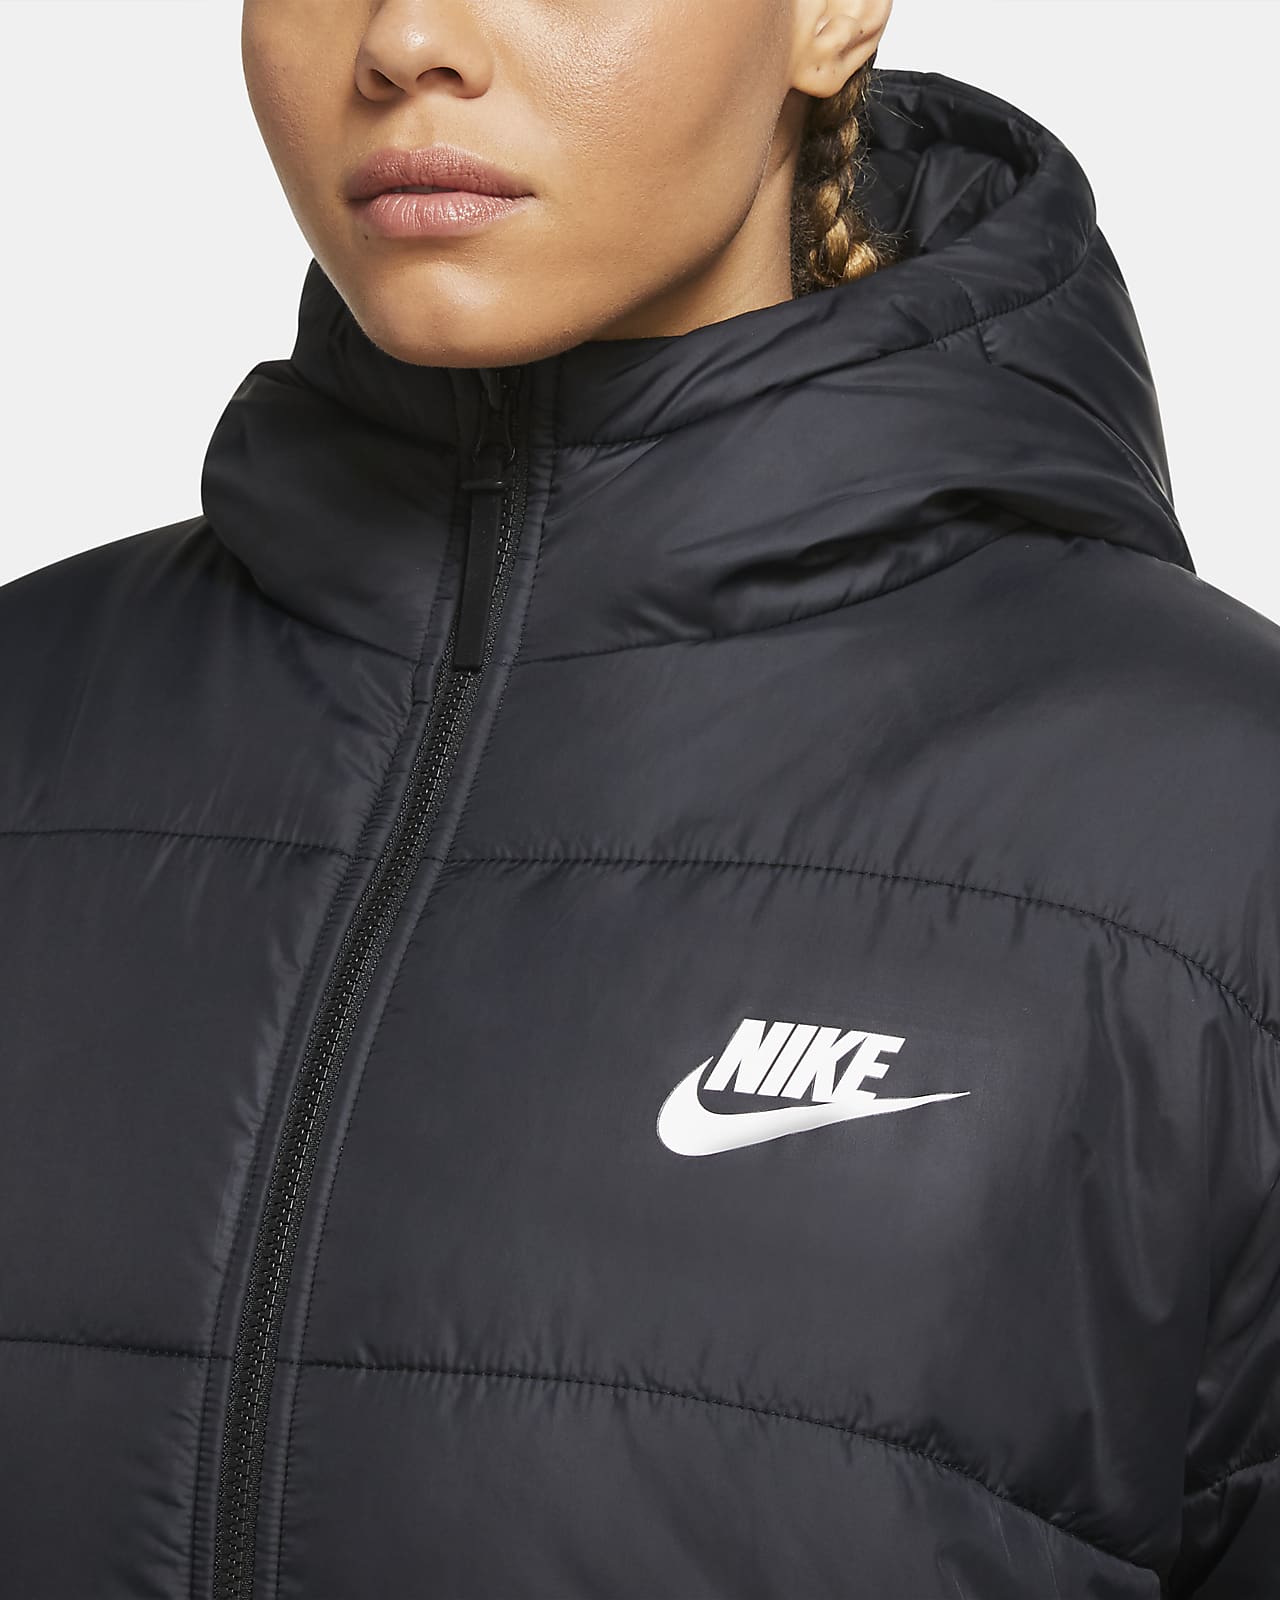 nike women's plus size jackets